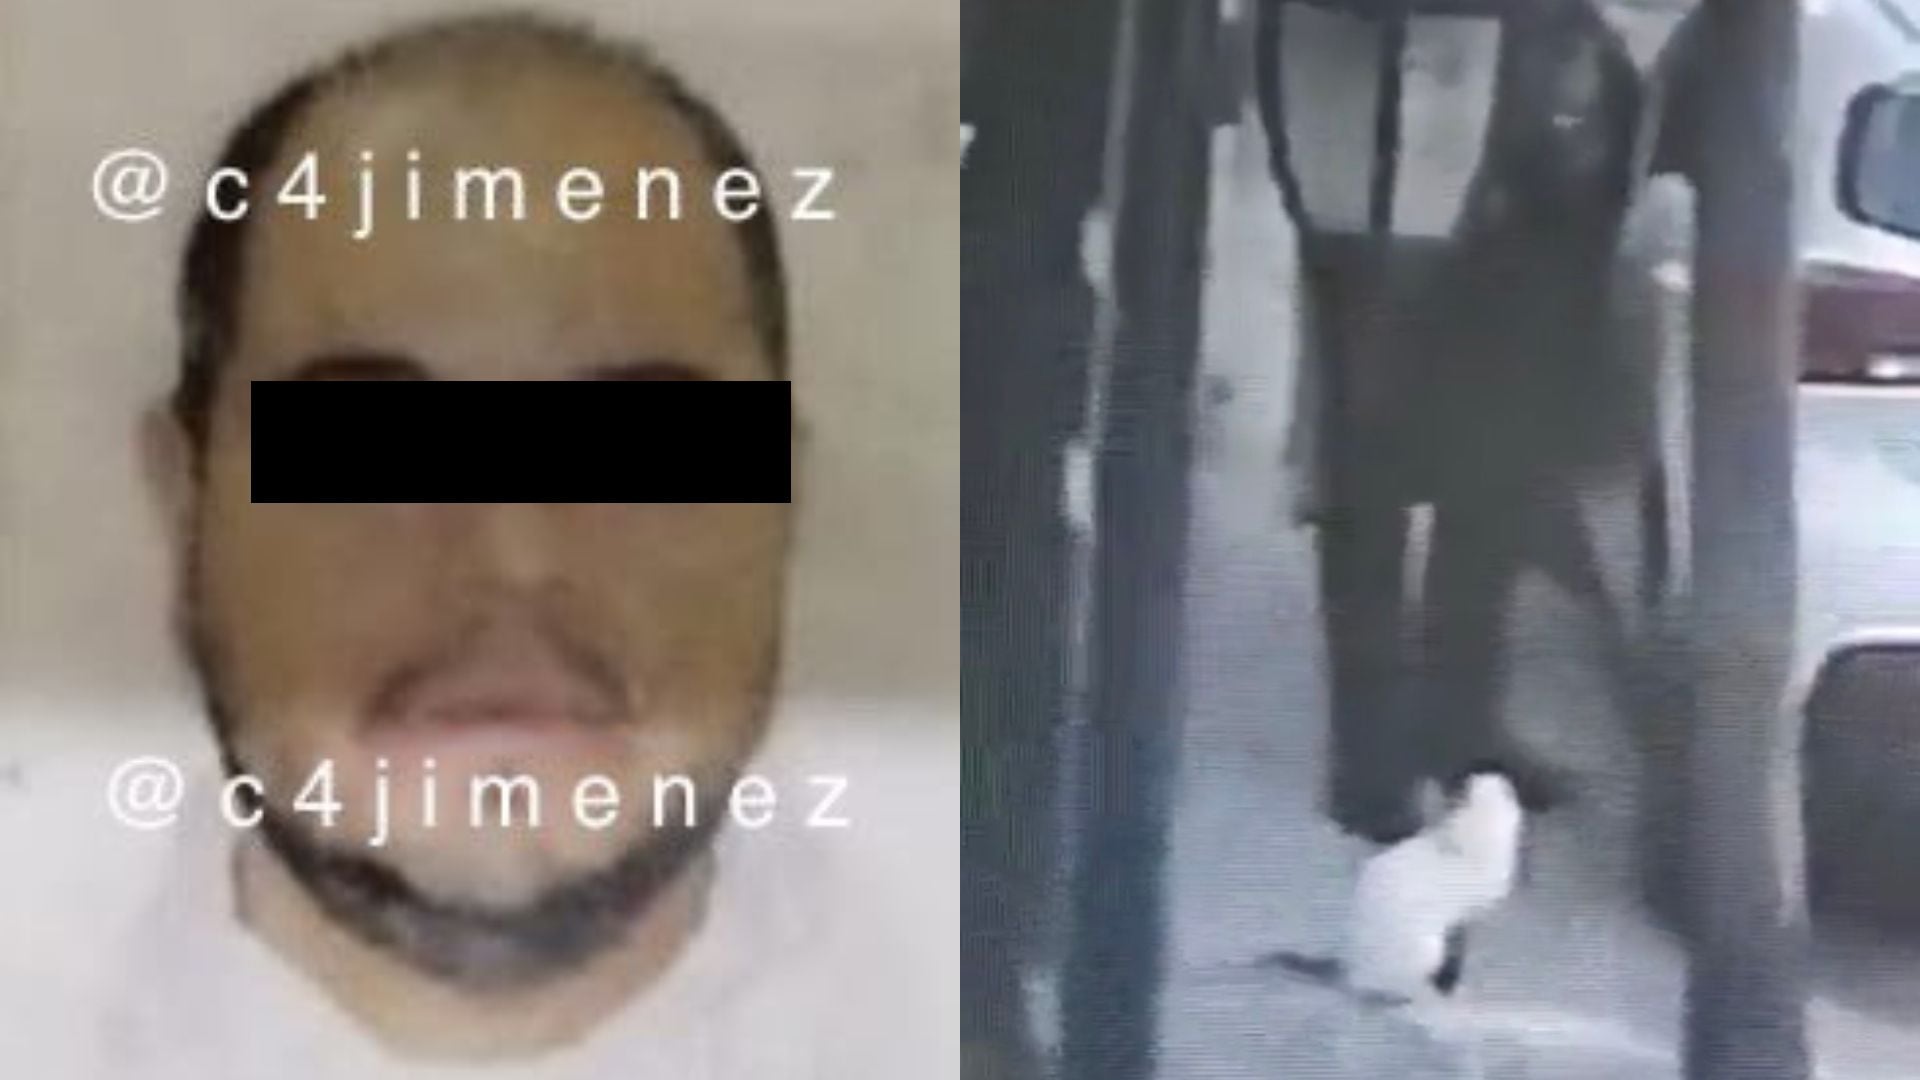 El sujeto fue localizado por los cuerpos policiales de Tlalnepantla. (Twitter/@c4jimenez)